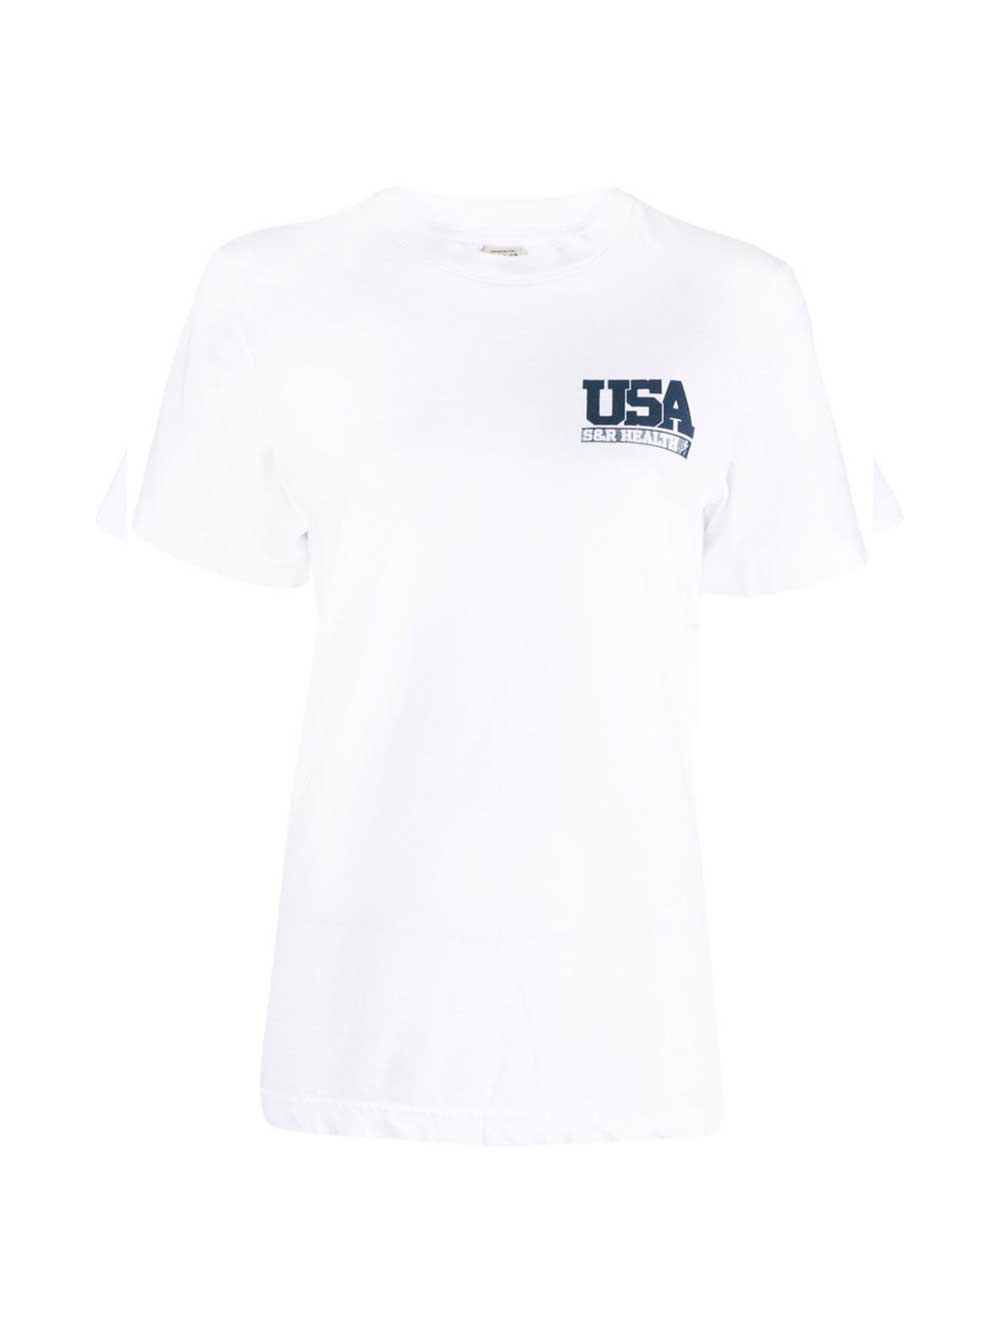 T-shirt Team Usa